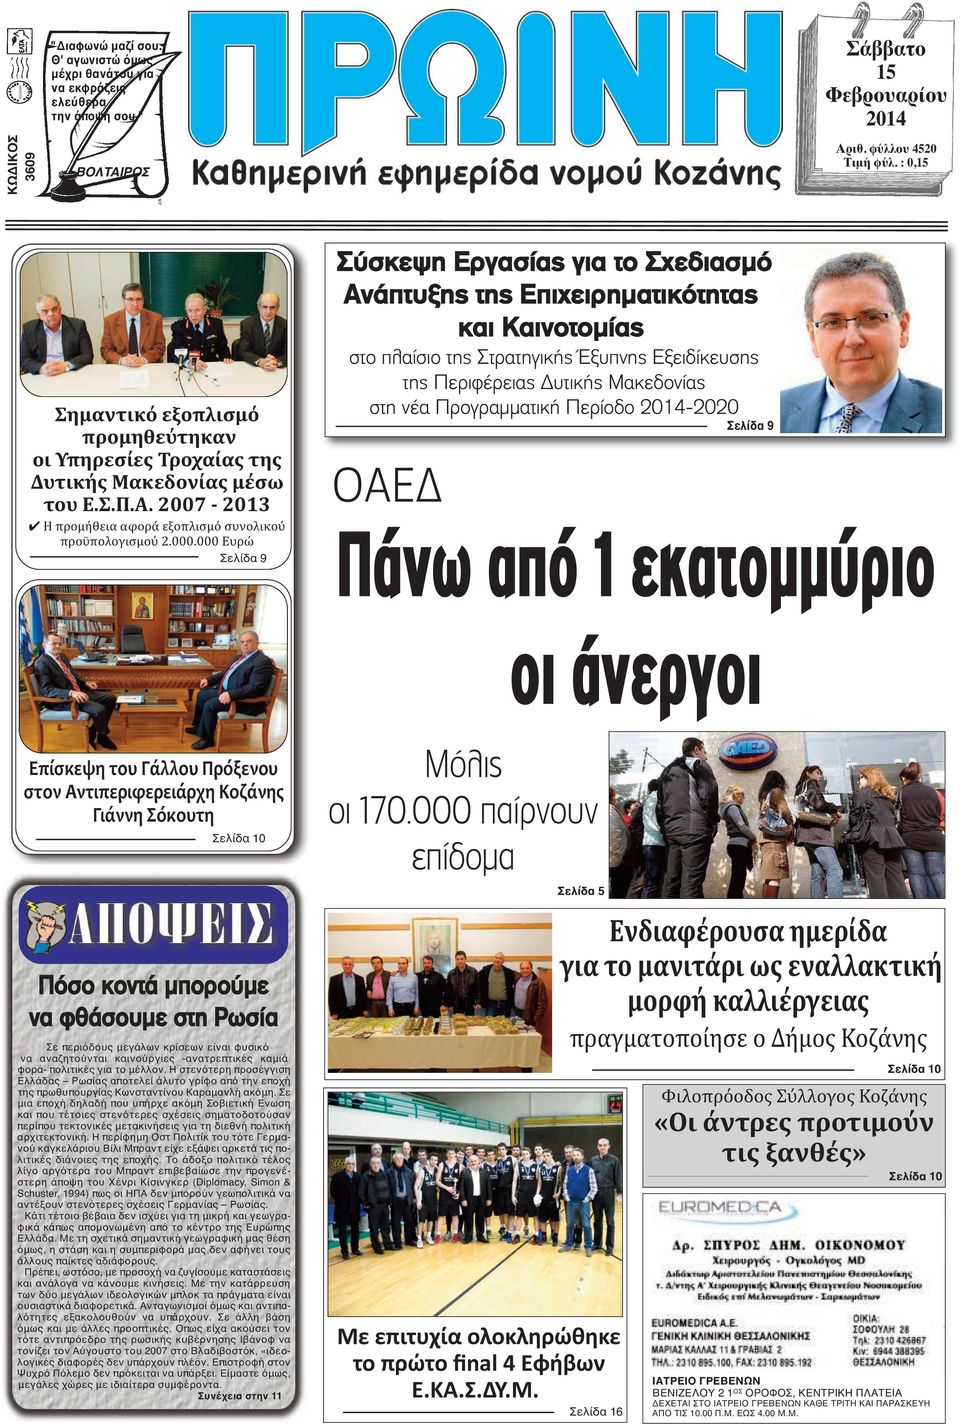 000 Ευρώ Σελίδα 9 Σύσκεψη Εργασίας για το Σχεδιασμό Ανάπτυξης της Επιχειρηματικότητας και Καινοτομίας στο πλαίσιο της Στρατηγικής Έξυπνης Εξειδίκευσης της Περιφέρειας Δυτικής Μακεδονίας στη νέα